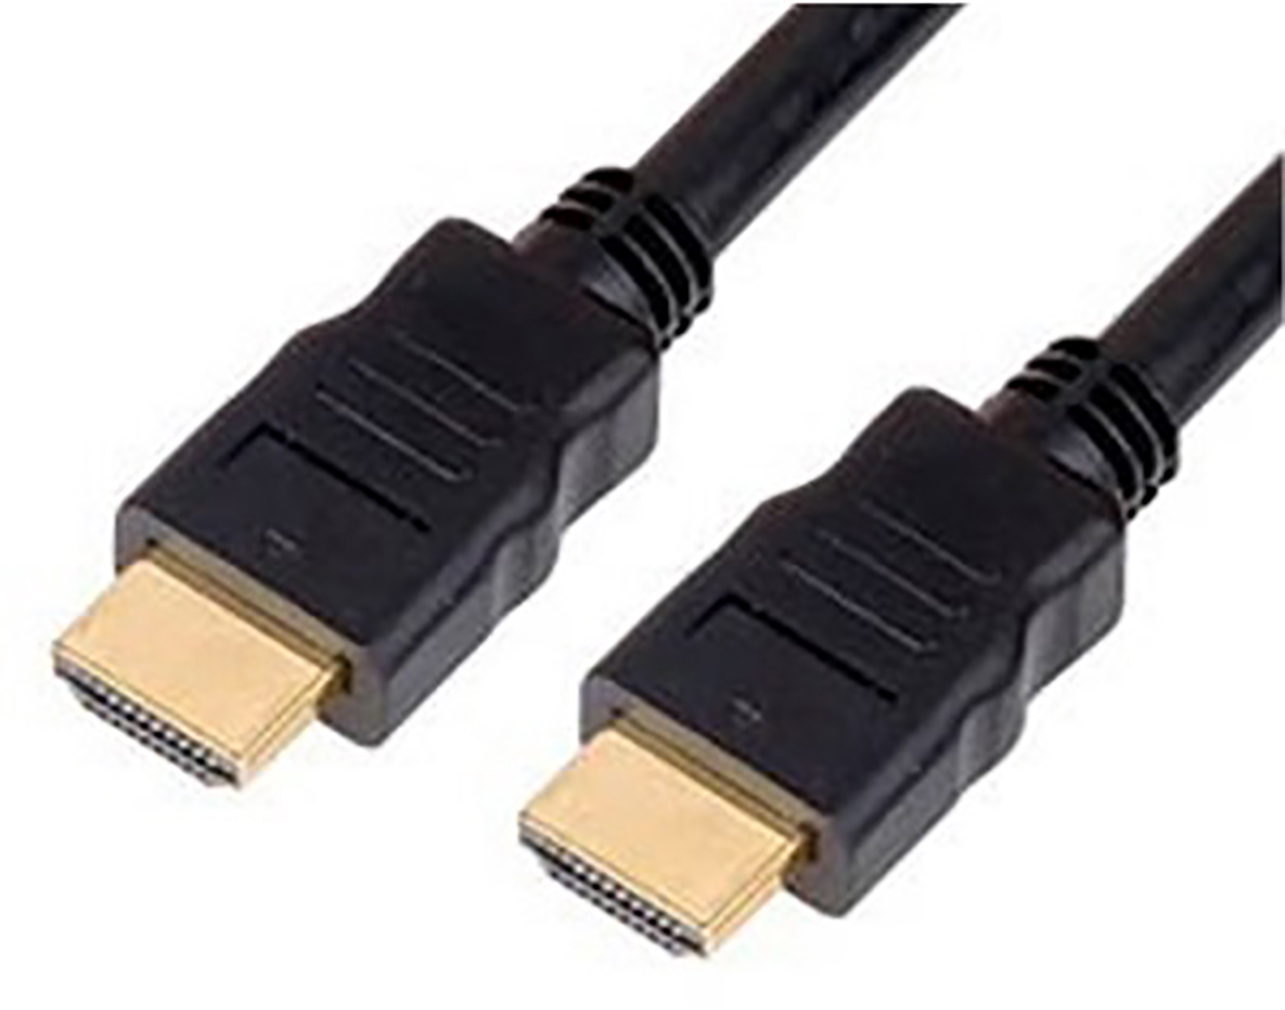 ΚΑΛΩΔΙΟ HDMI-HDMI 1.4V 1.5m CCS ΜΑΥΡΟ BULK OWI